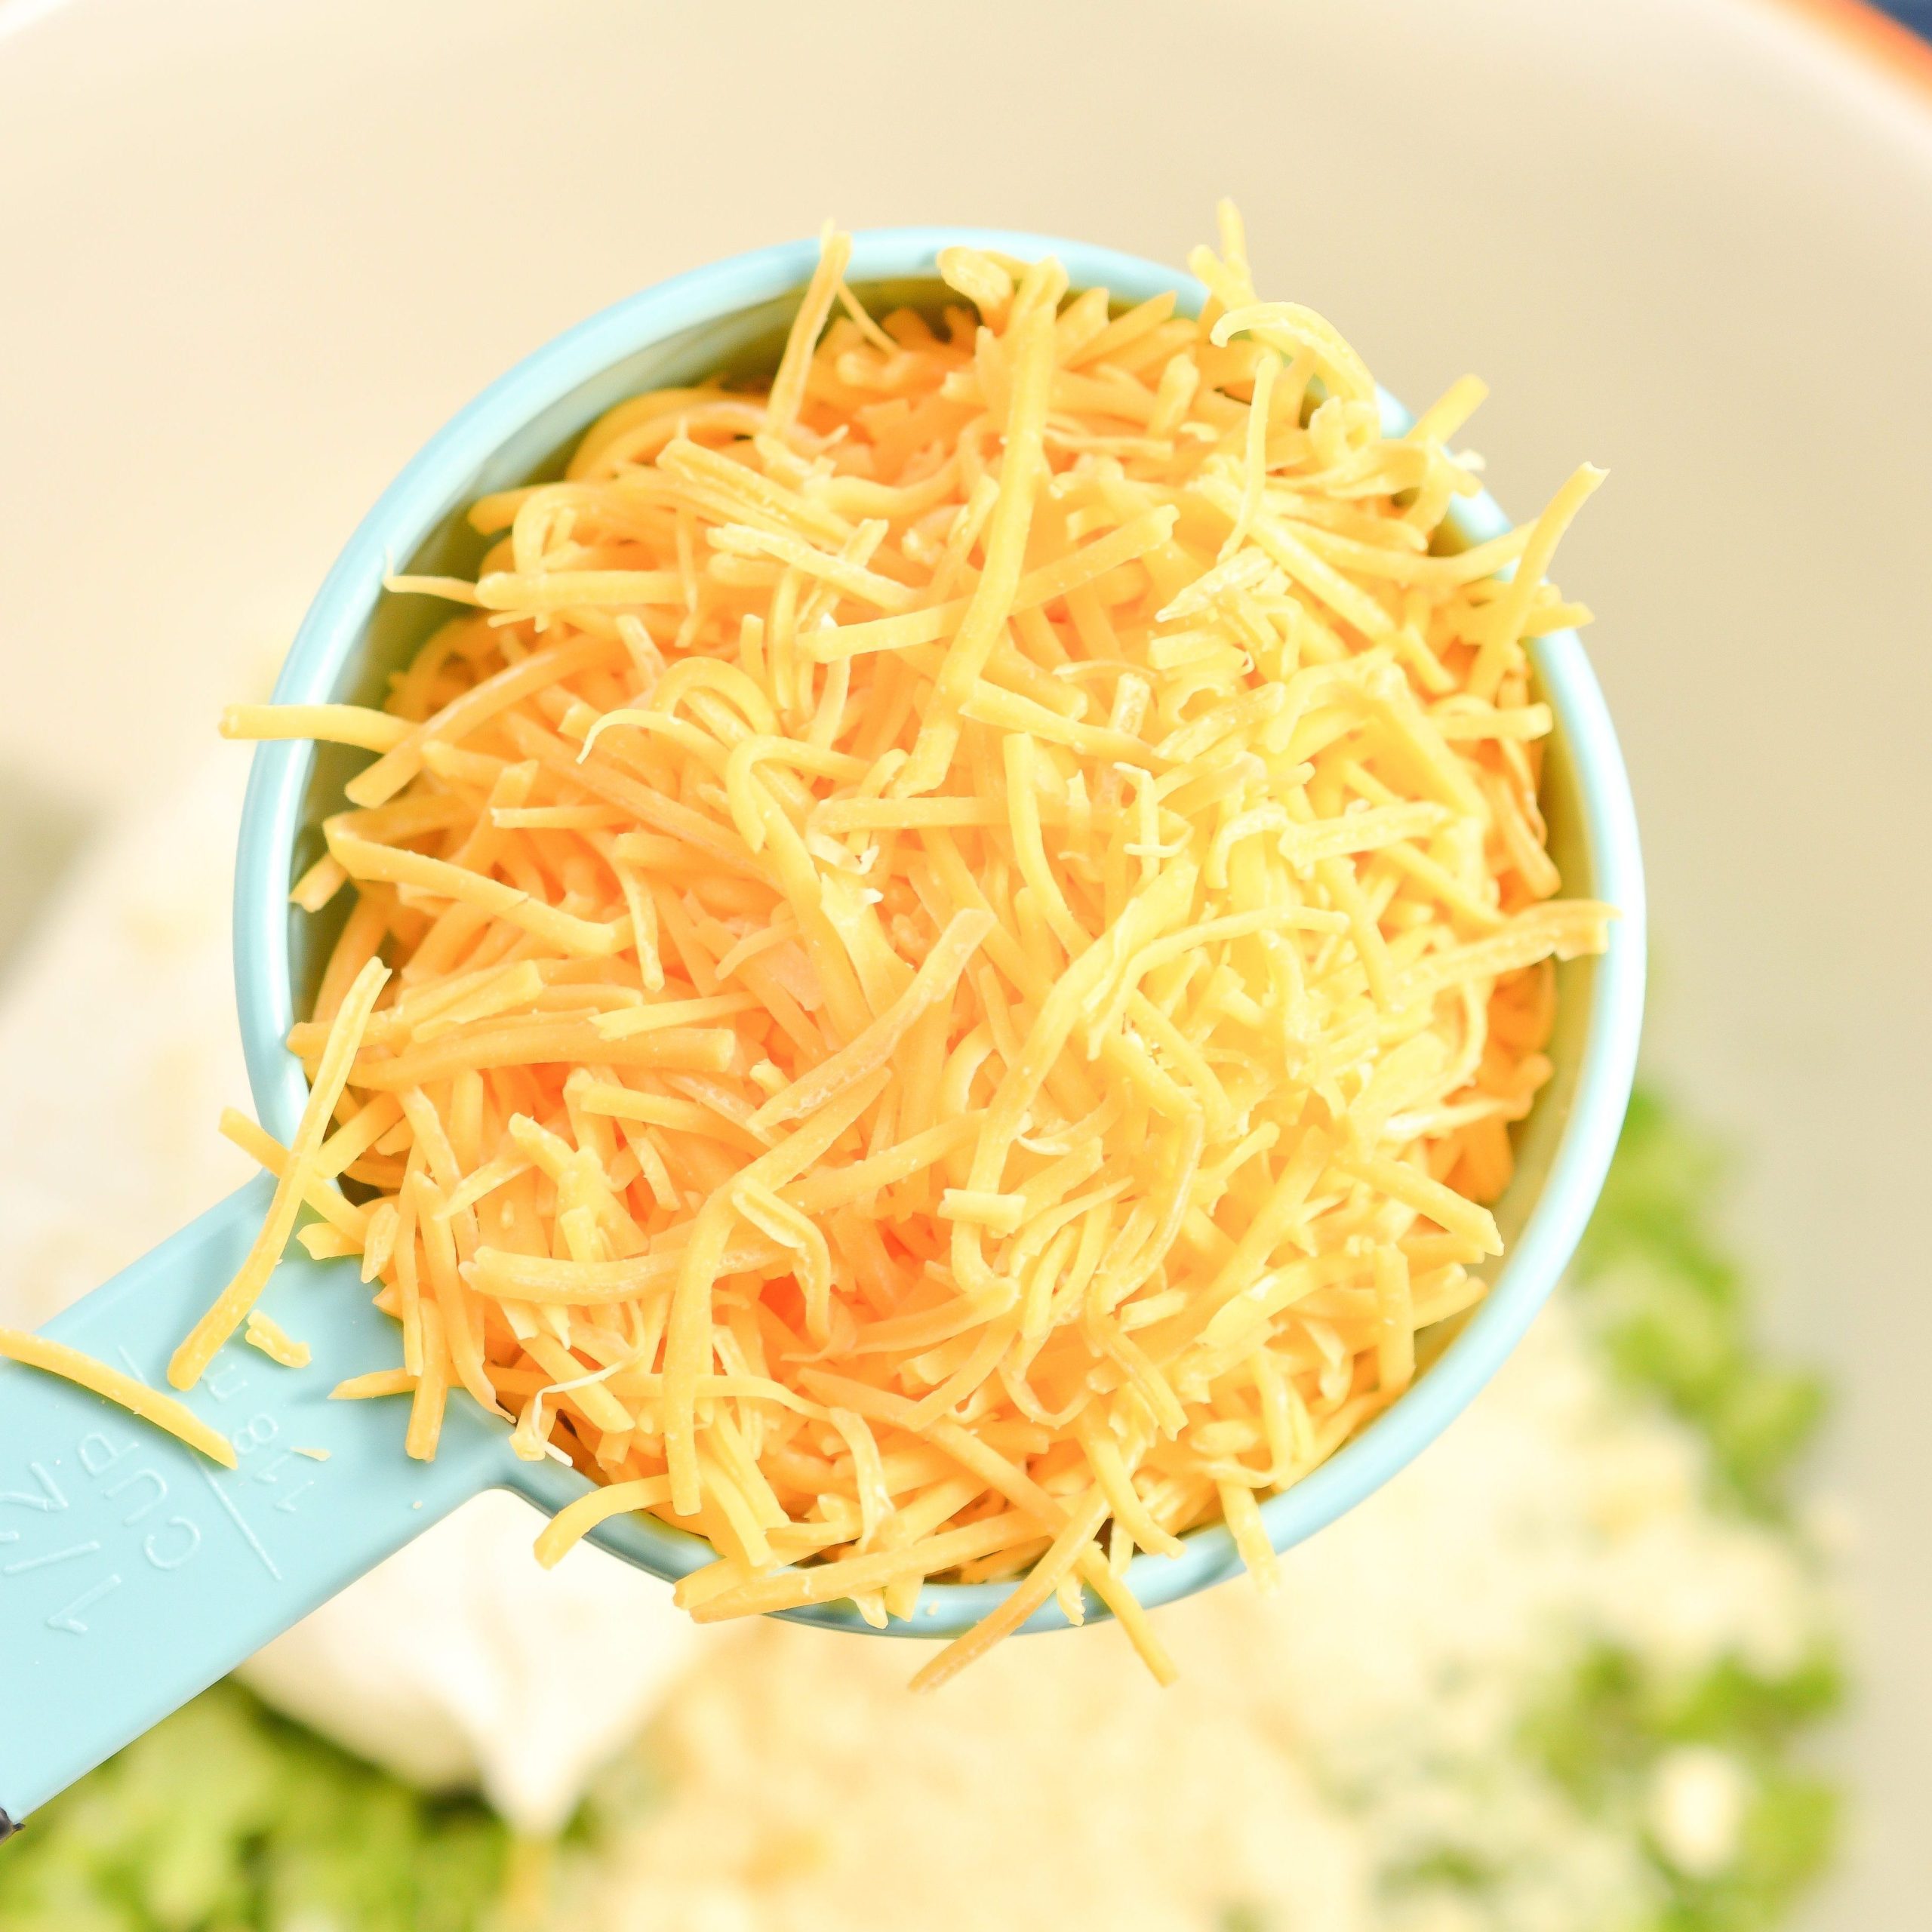 add ½ cup of cheddar cheese shredded. 